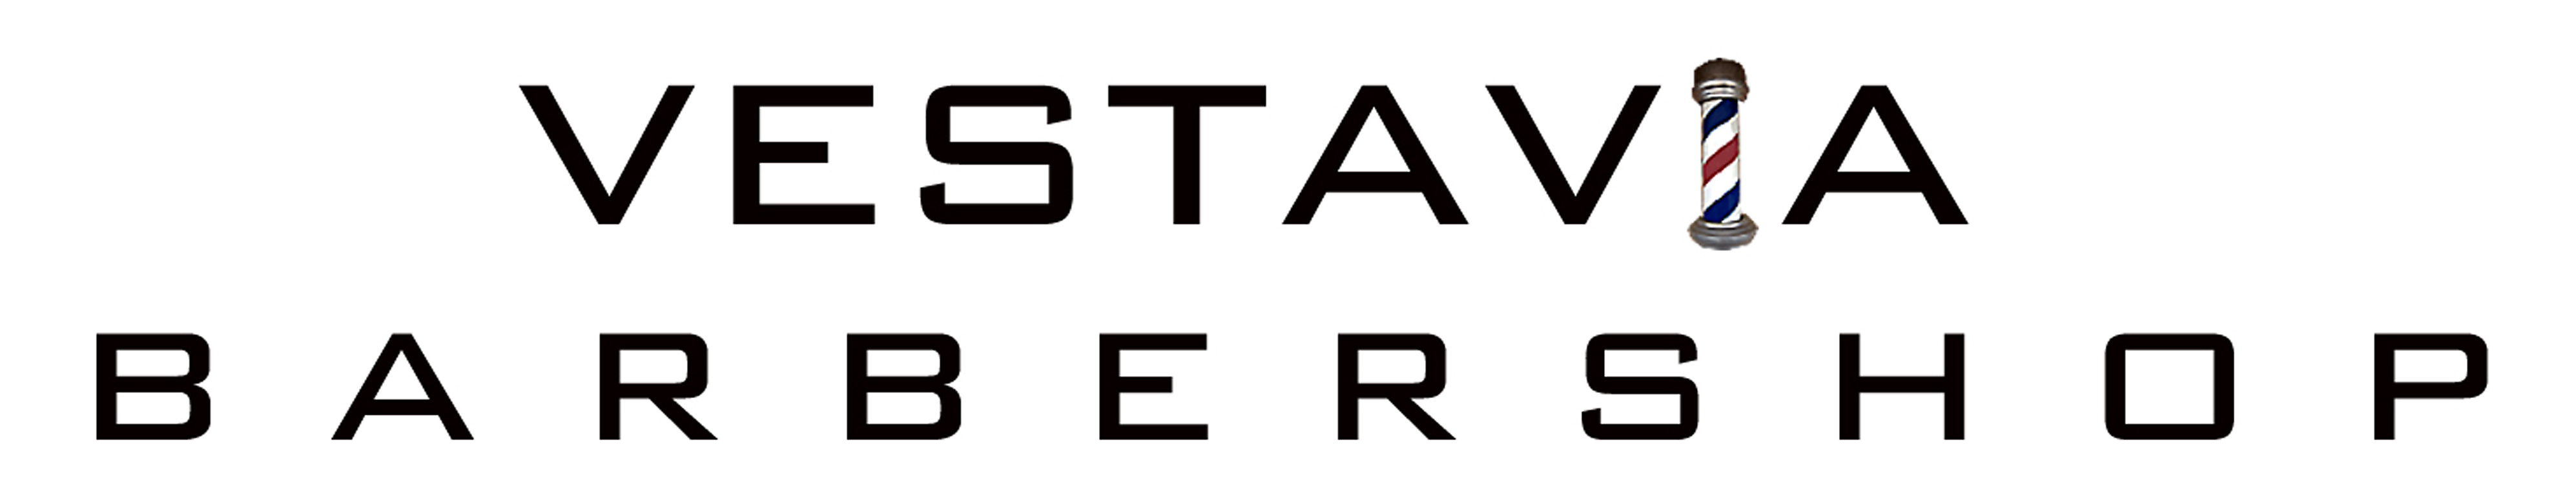 Vestavia Barber logo